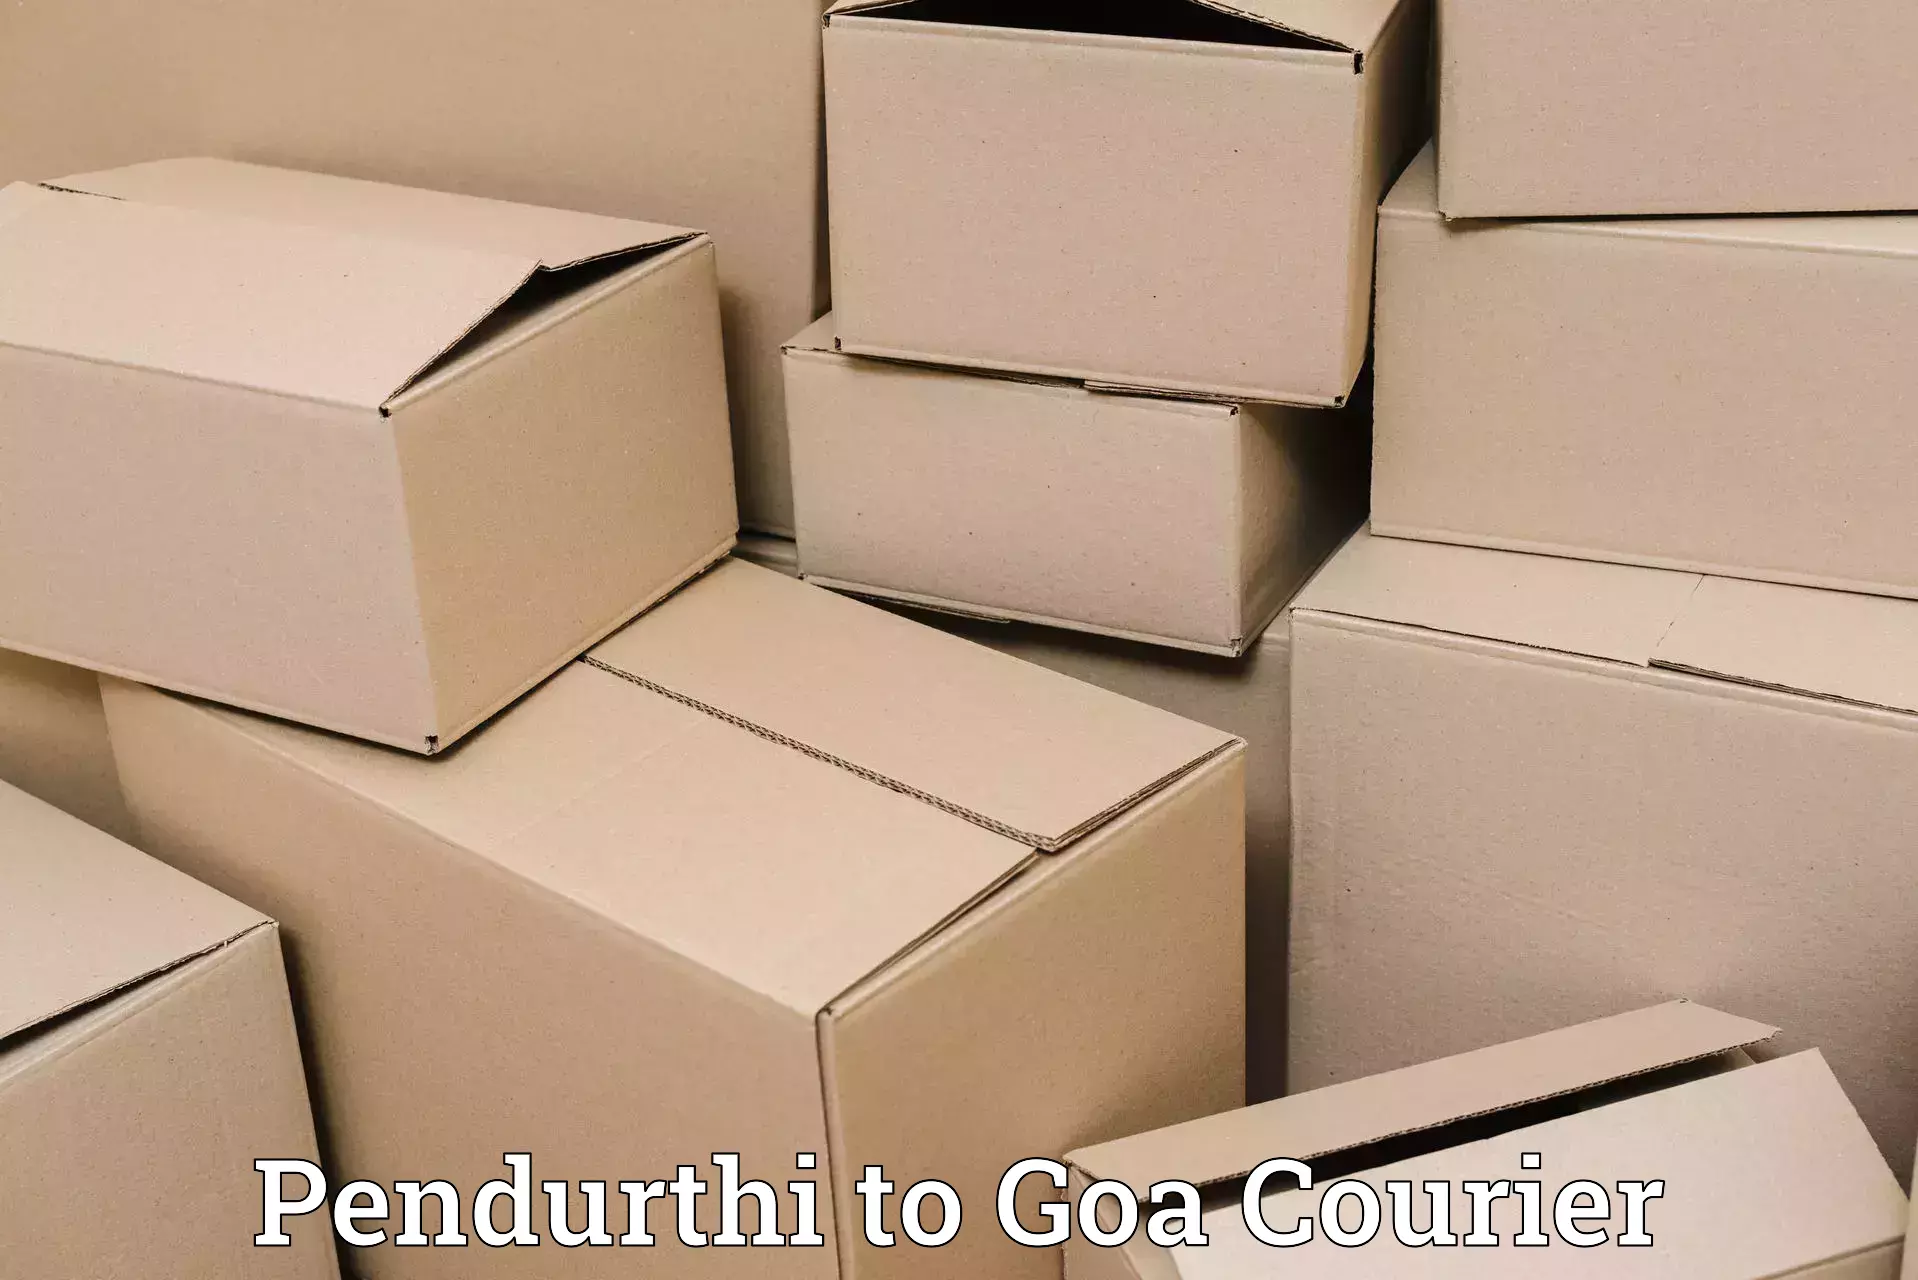 Efficient logistics management Pendurthi to Vasco da Gama